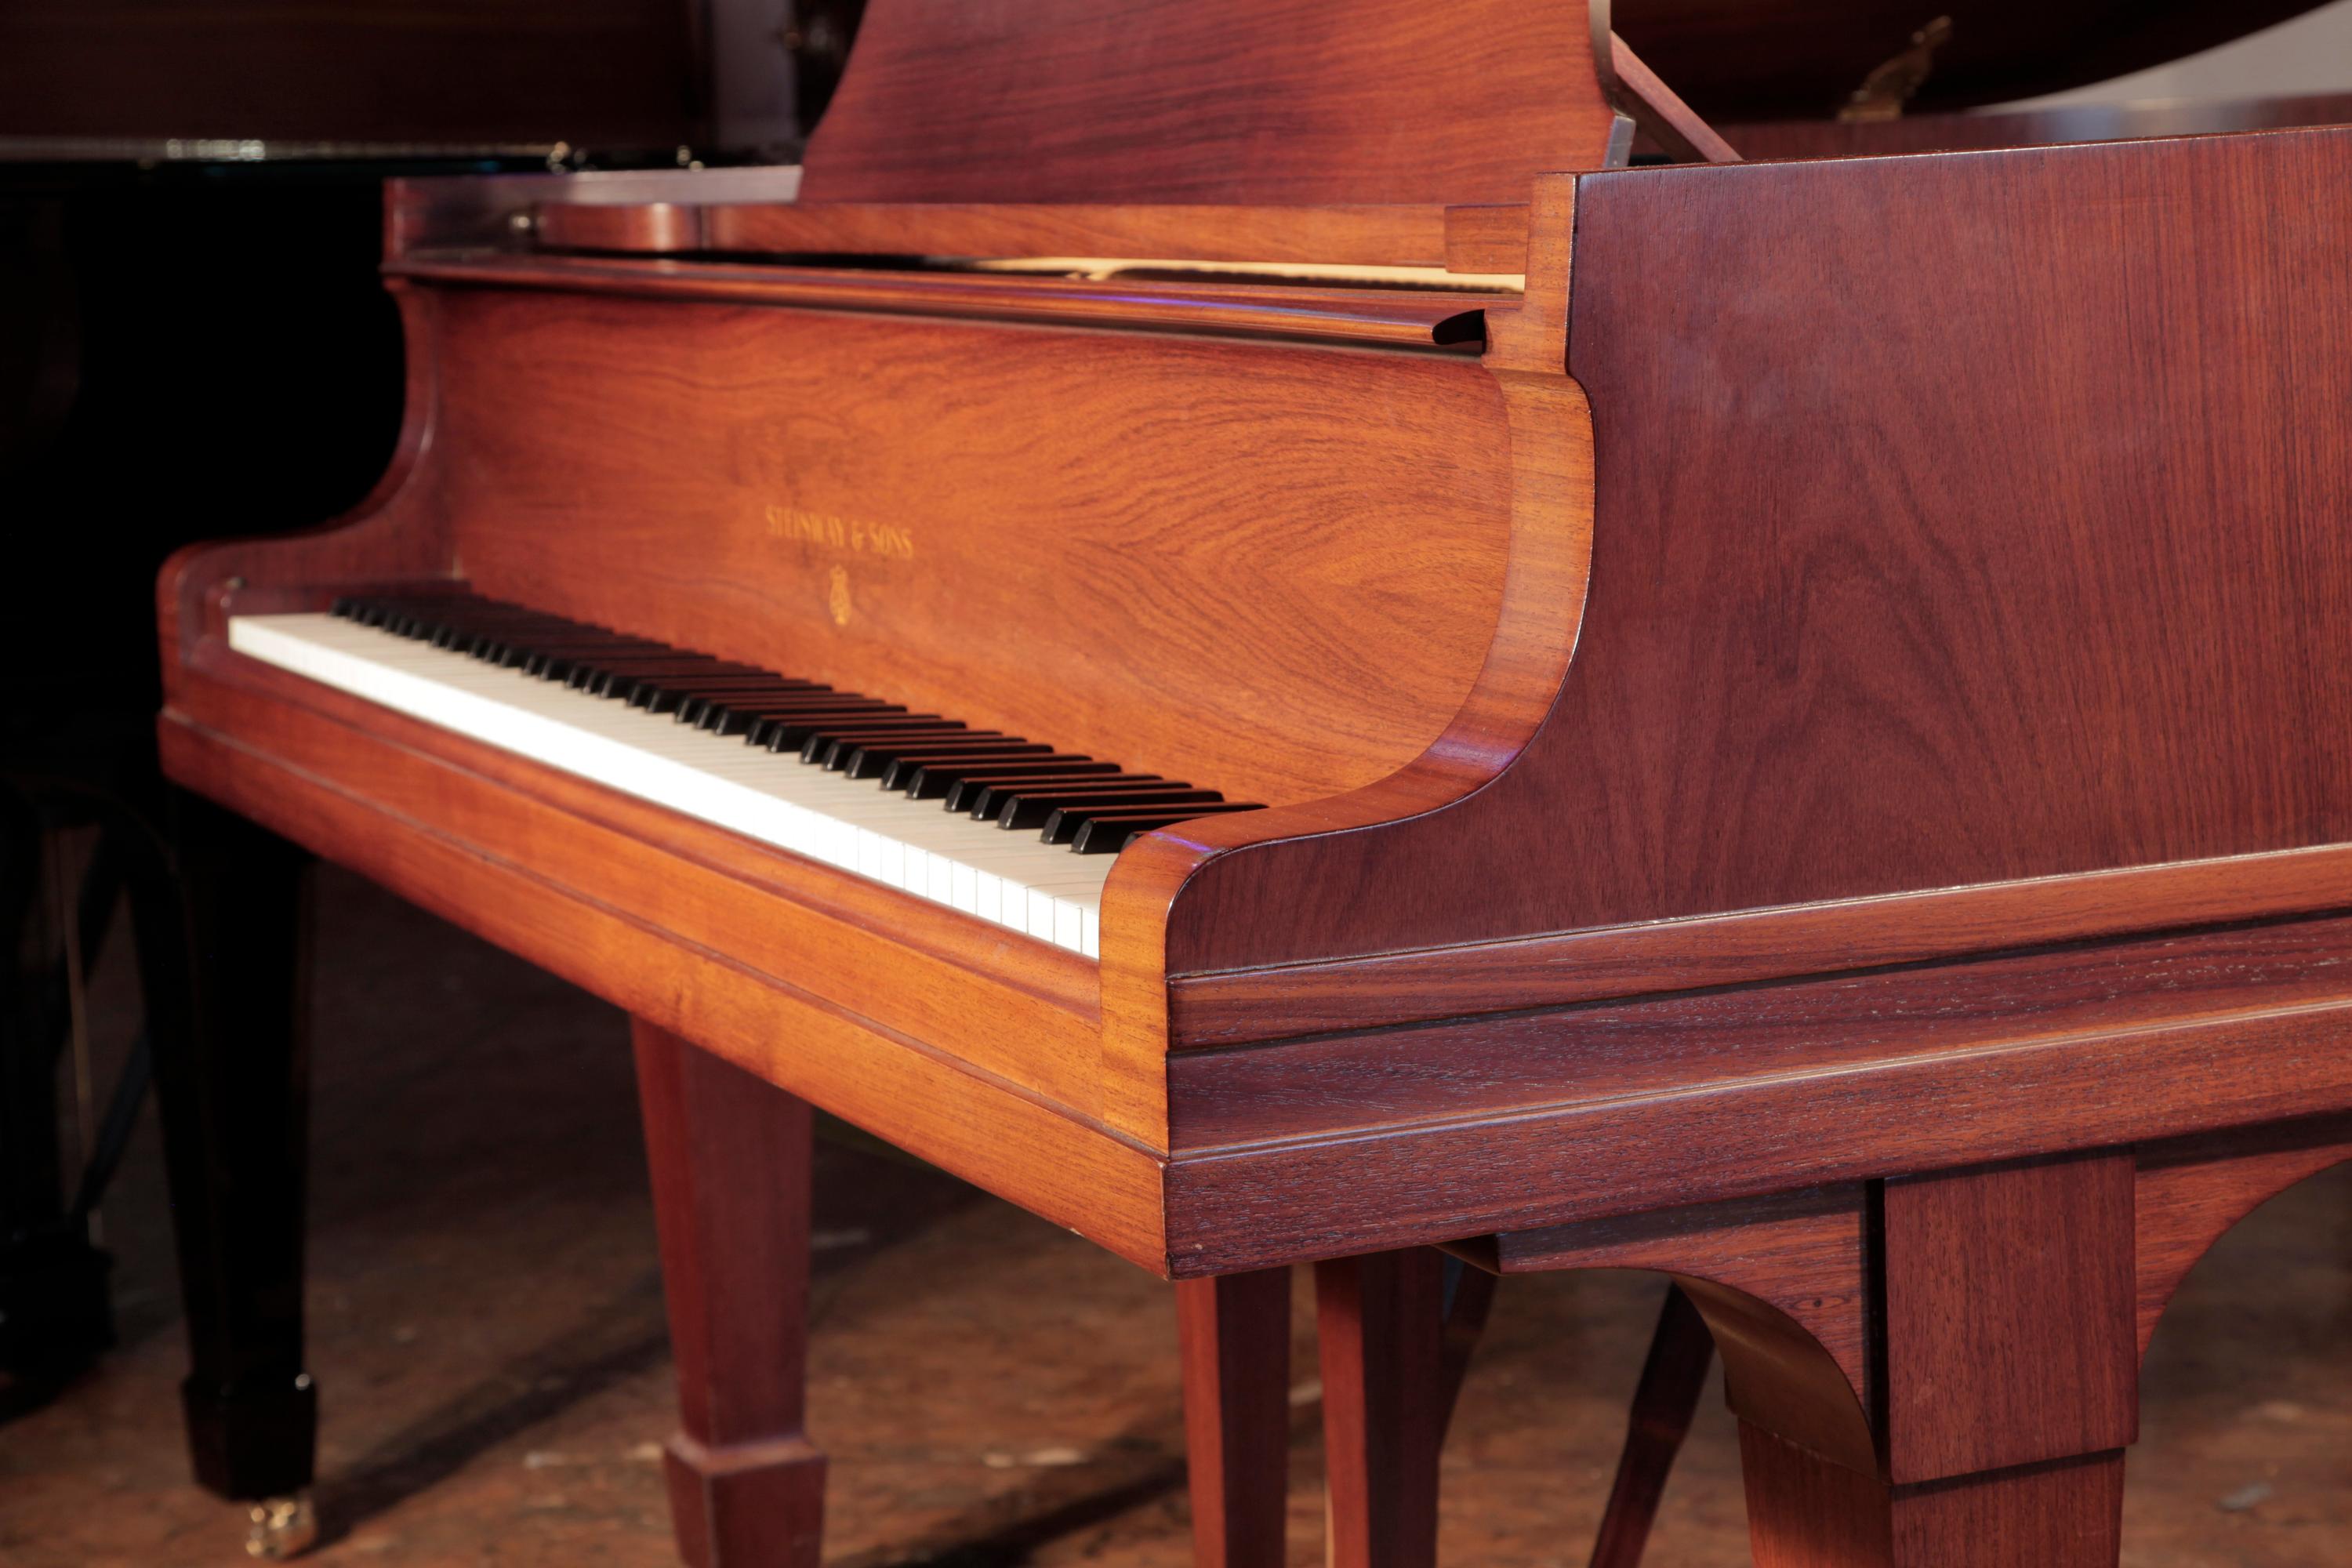 
Piano à queue Steinway modèle O de 1925, reconstruit, à vendre avec un buffet en noyer poli et des pieds en bêche. Le piano dispose d'un clavier de 88 notes et d'une lyre à deux pédales.
Le logo Steinway est incrusté dans le bois de la table du